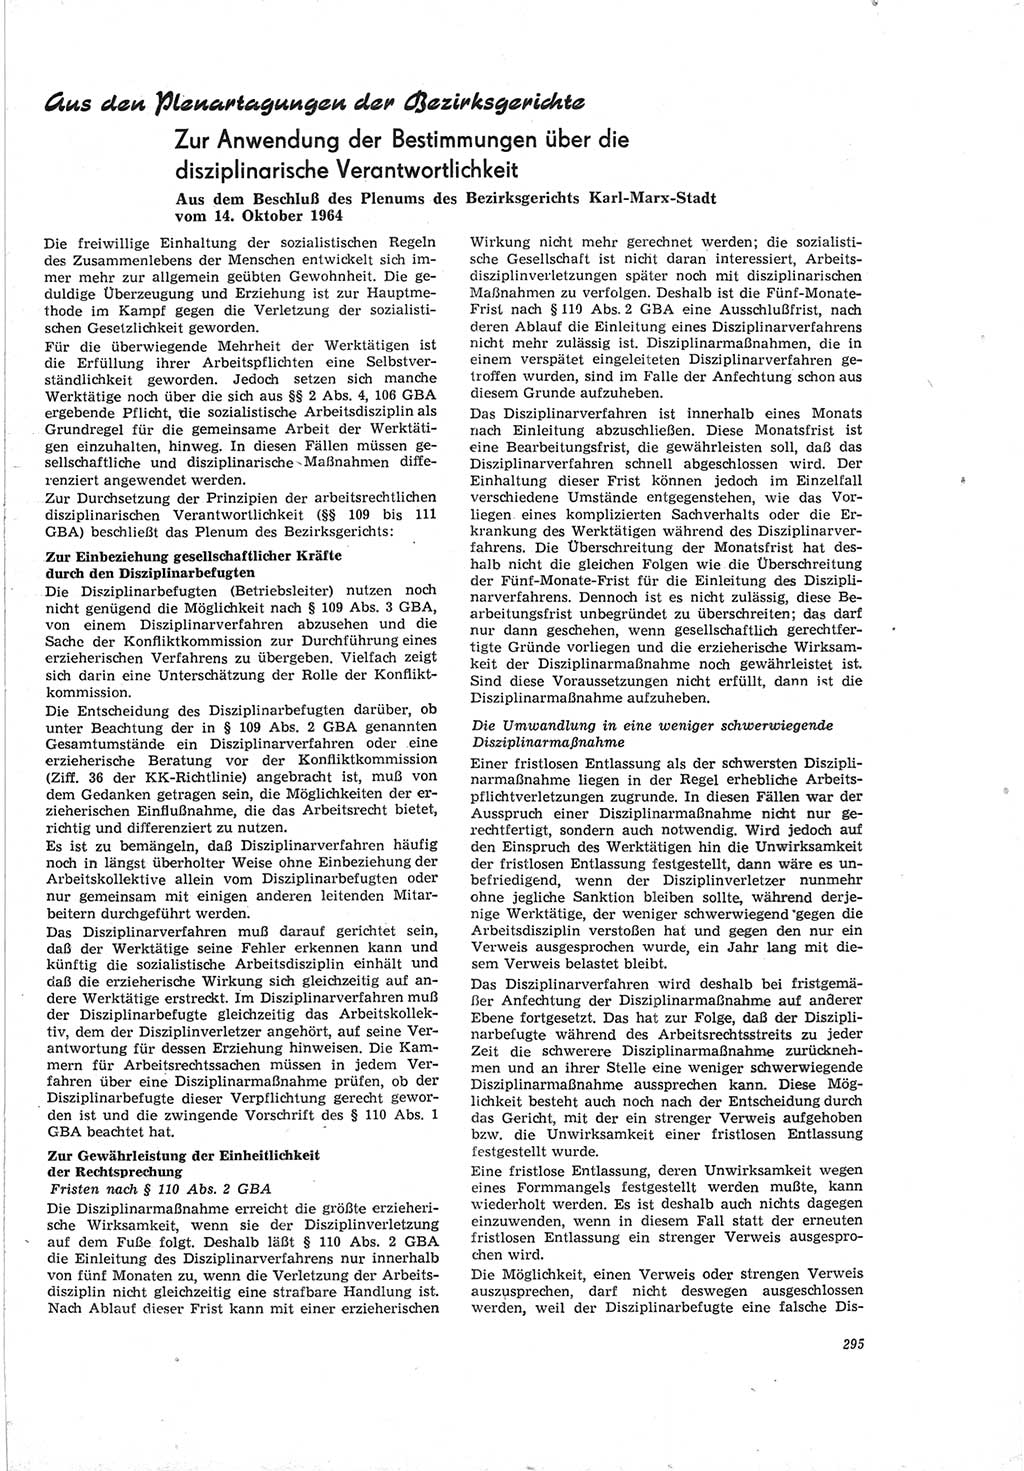 Neue Justiz (NJ), Zeitschrift für Recht und Rechtswissenschaft [Deutsche Demokratische Republik (DDR)], 19. Jahrgang 1965, Seite 295 (NJ DDR 1965, S. 295)